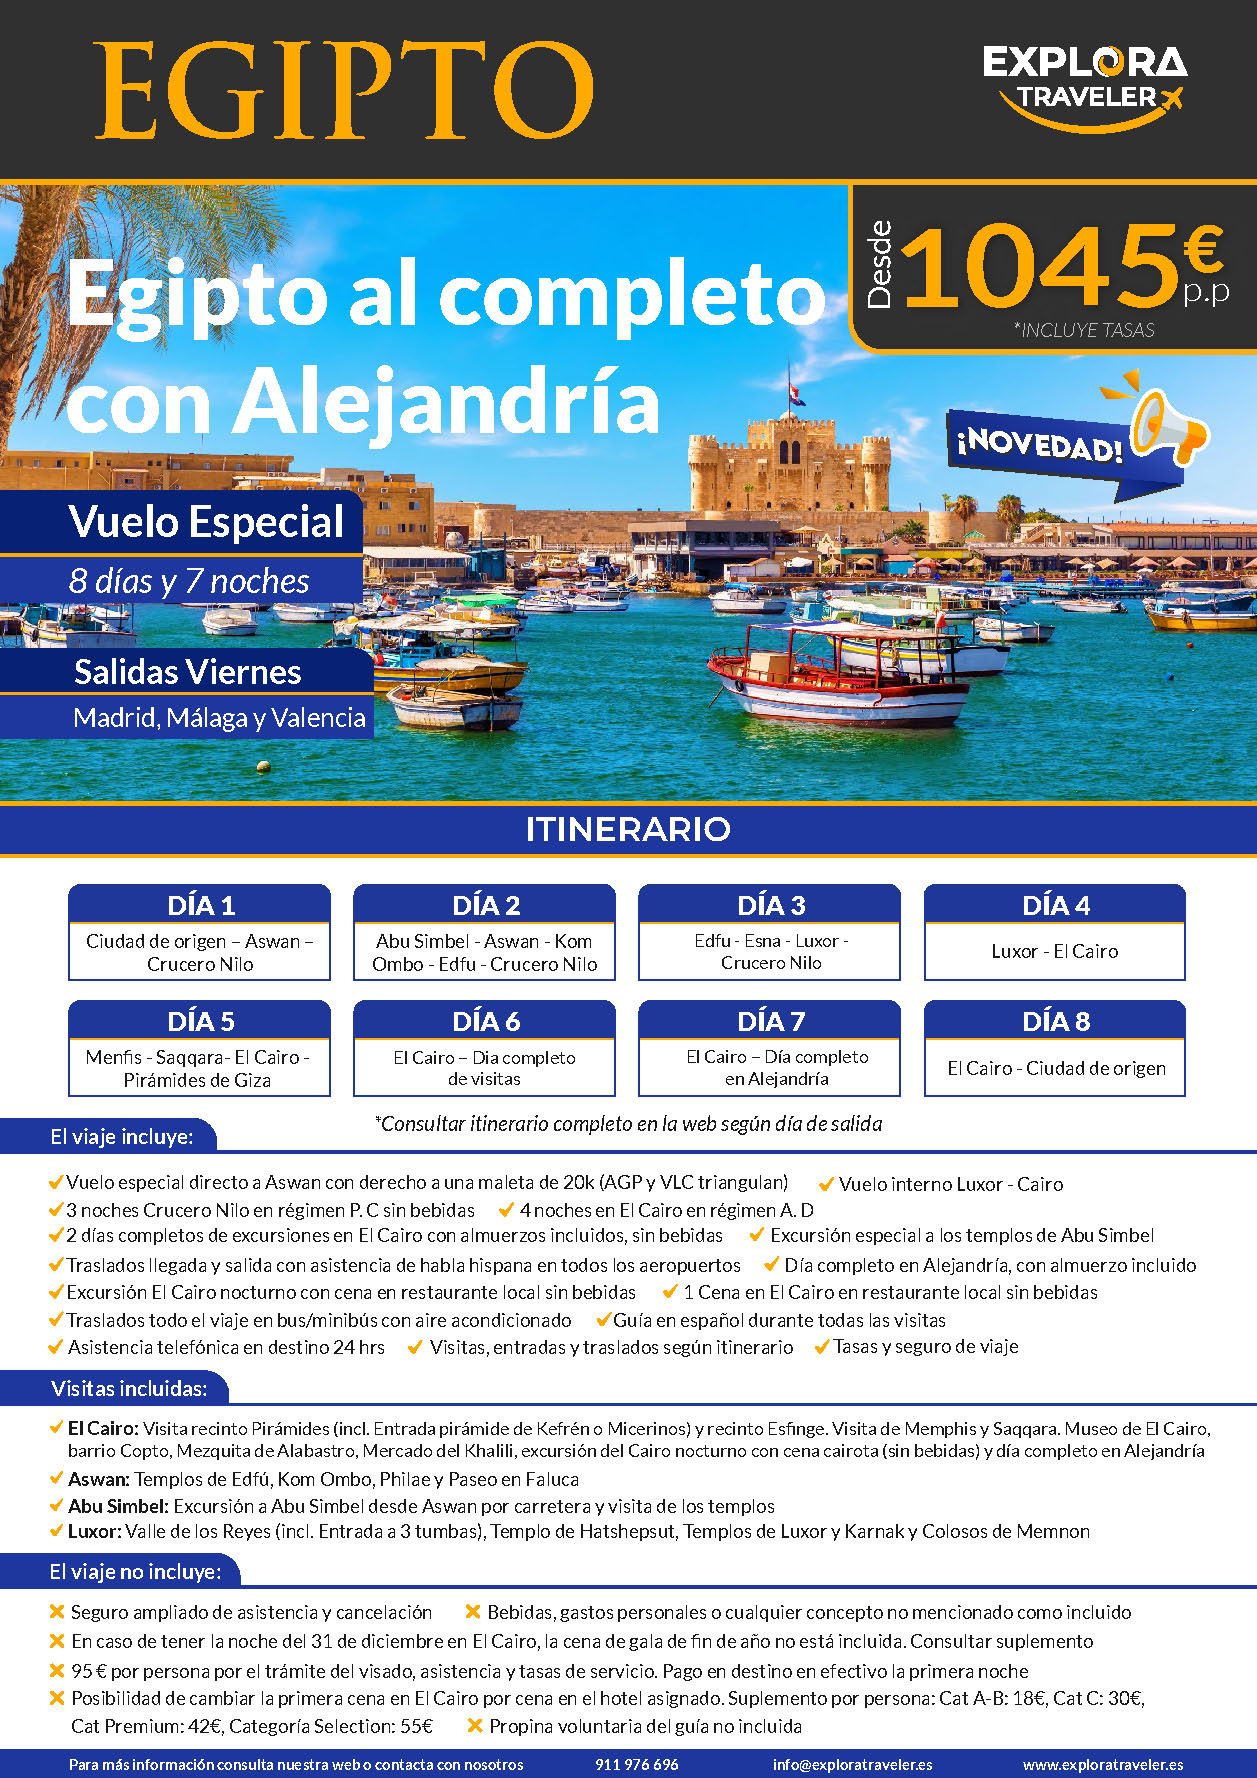 Oferta Explora Traveler Egipto al Completo con Alejandria 8 dias salidas 2023-2024 salidas desde Madrid Malaga y Valencia